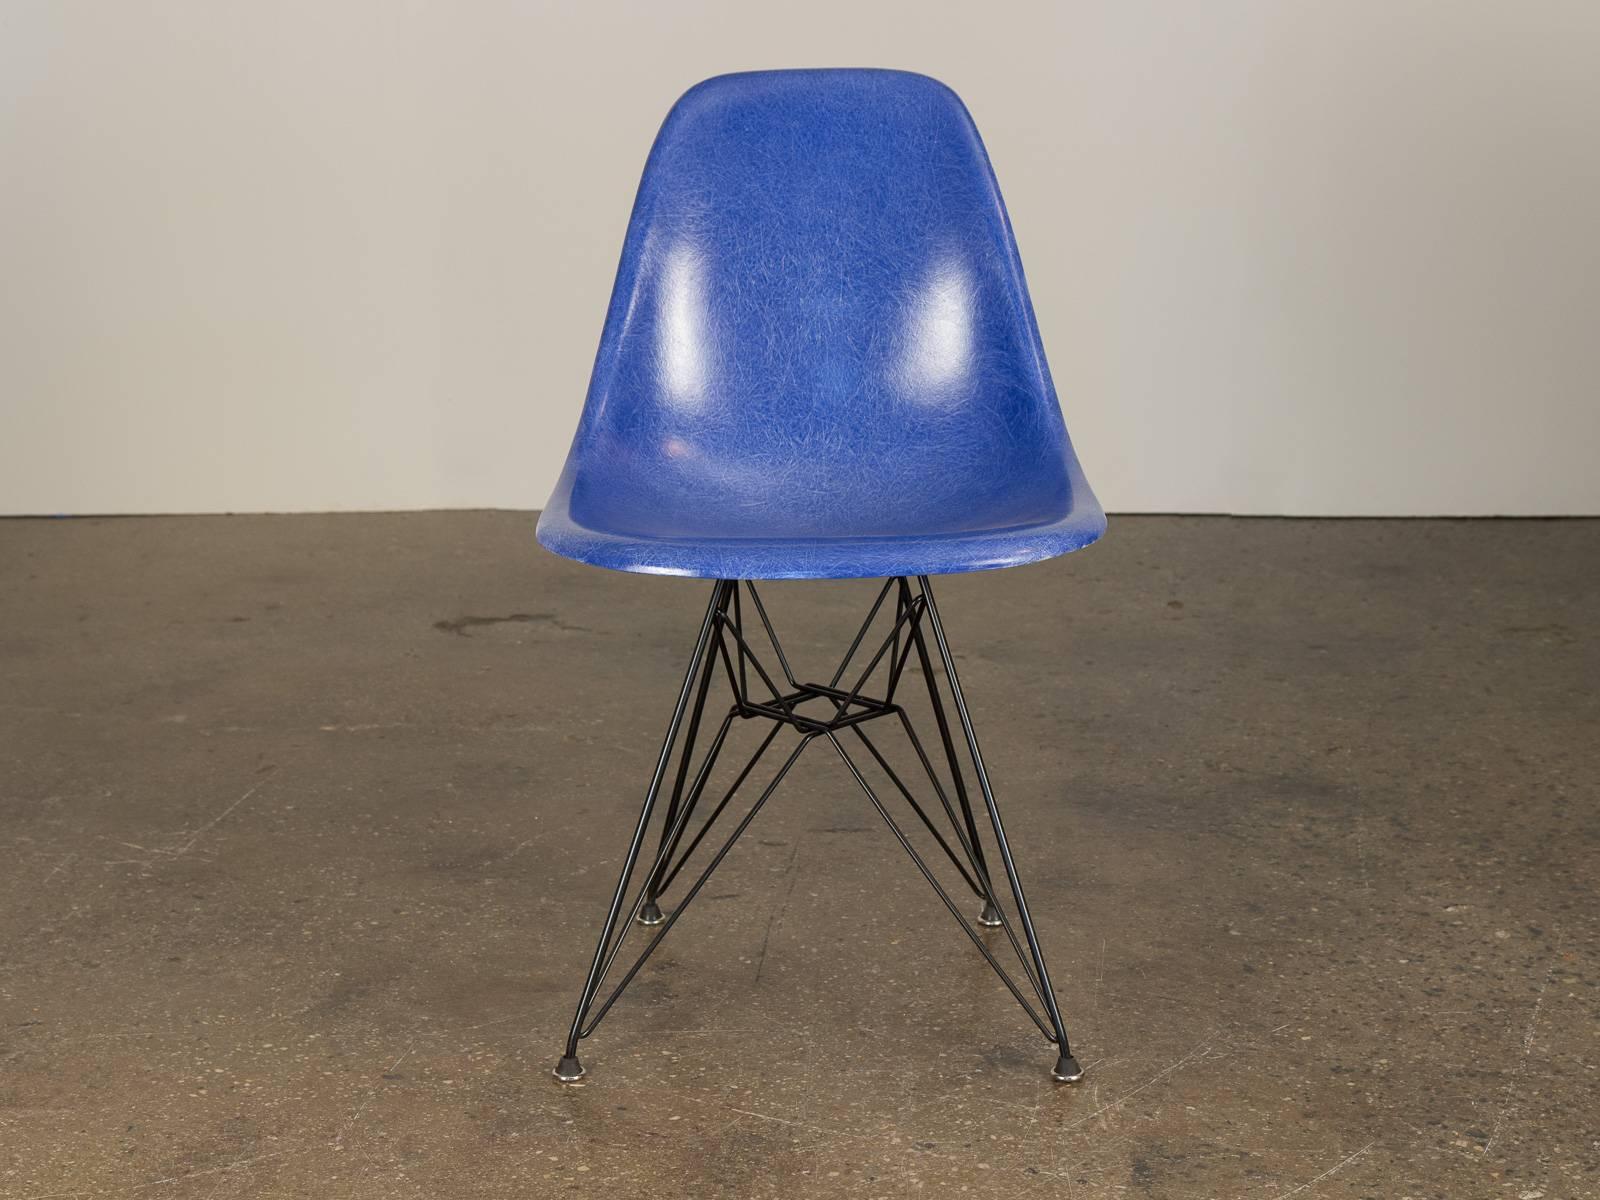 Chaises originales en fibre de verre moulée des années 1960 en bleu outremer, conçues par Charles et Ray Eames pour Herman Miller. Les coquilles brillantes sont en état d'origine, chacune ayant une texture filiforme distincte.  Montré ici monté sur